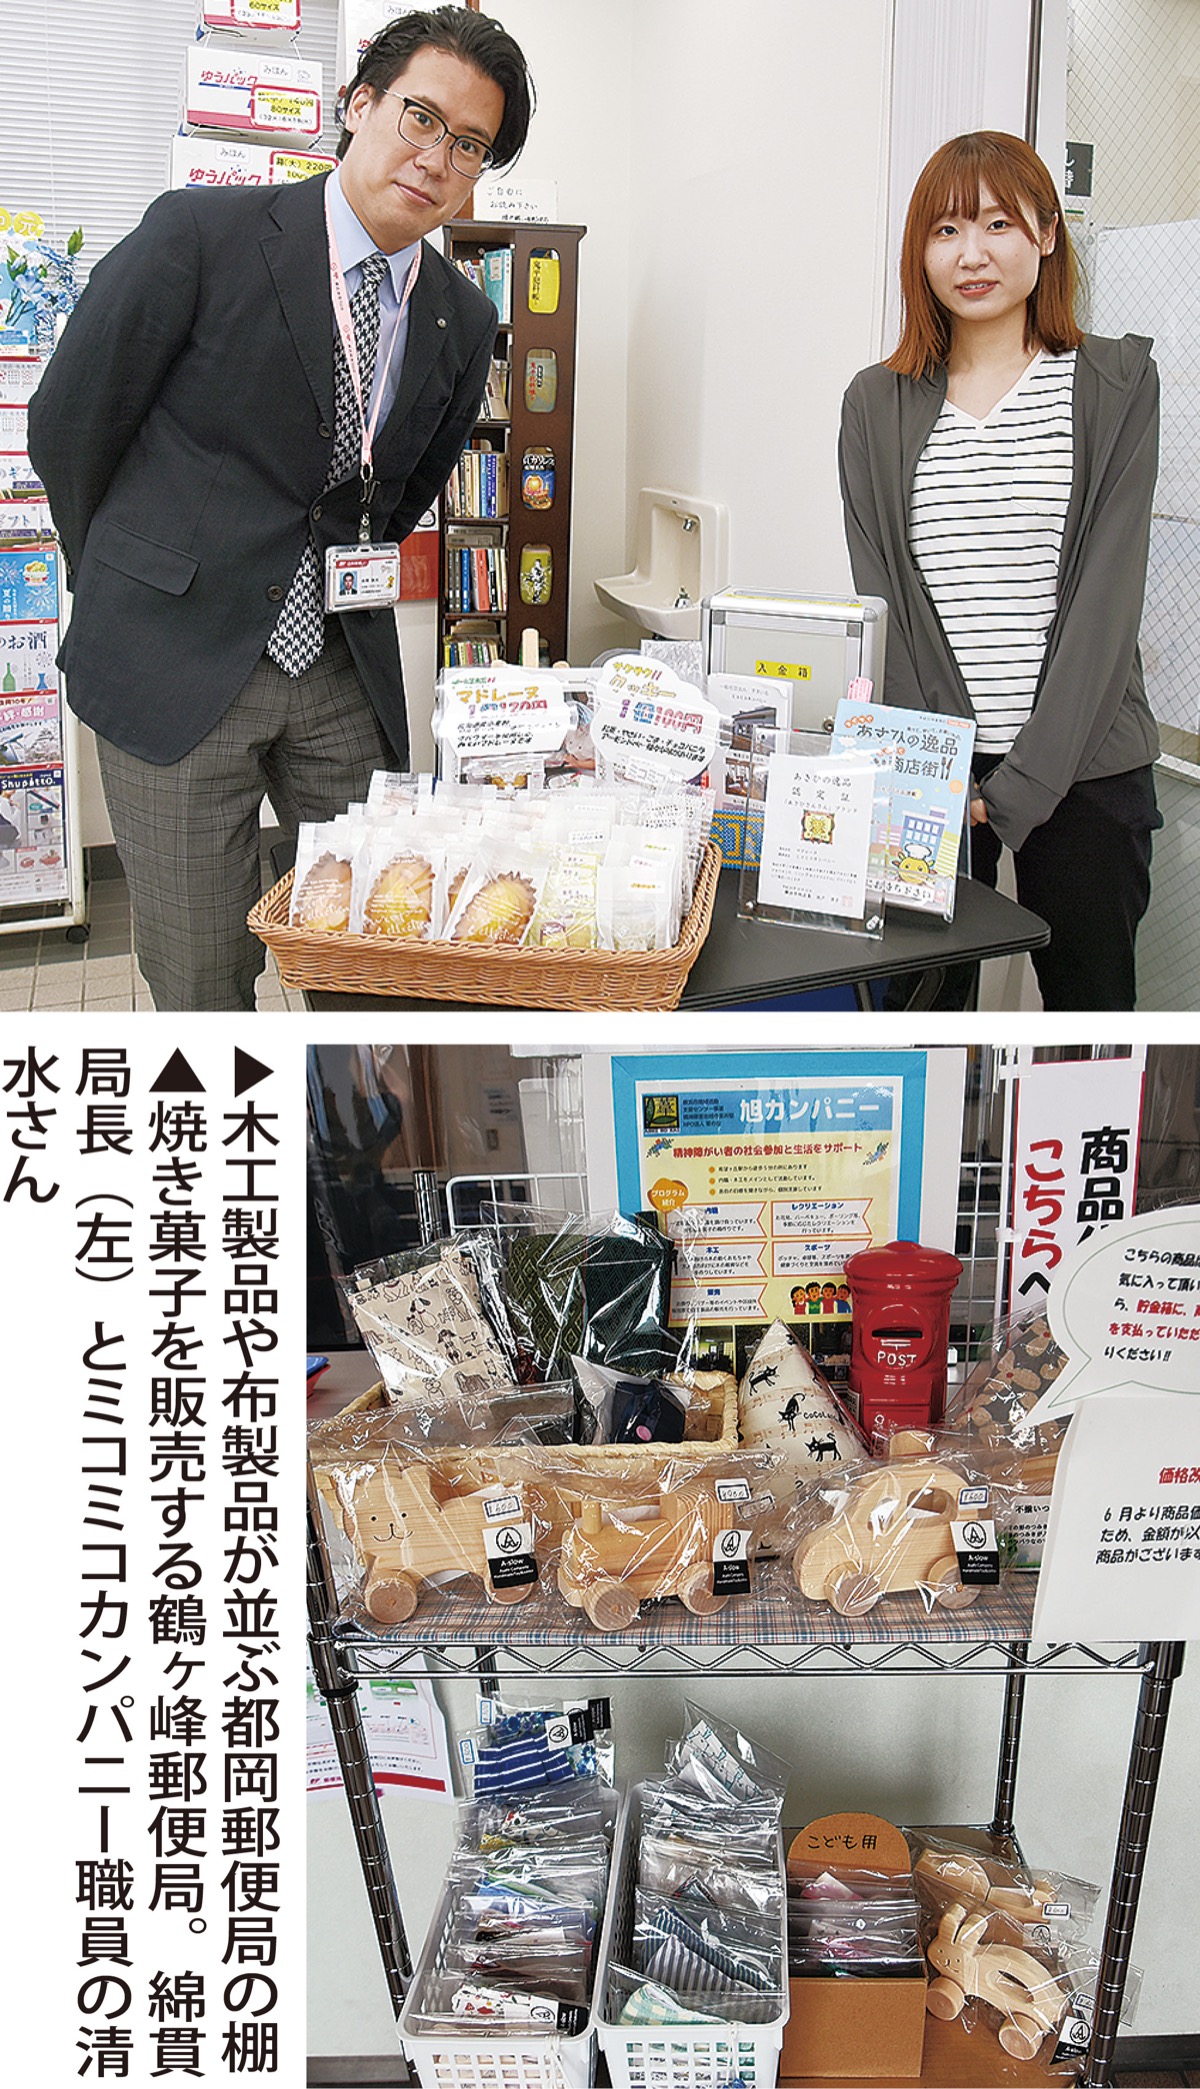 都岡 鶴ヶ峰郵便局 障害者施設の製品を販売 空きスペース提供 無人で 旭区 タウンニュース